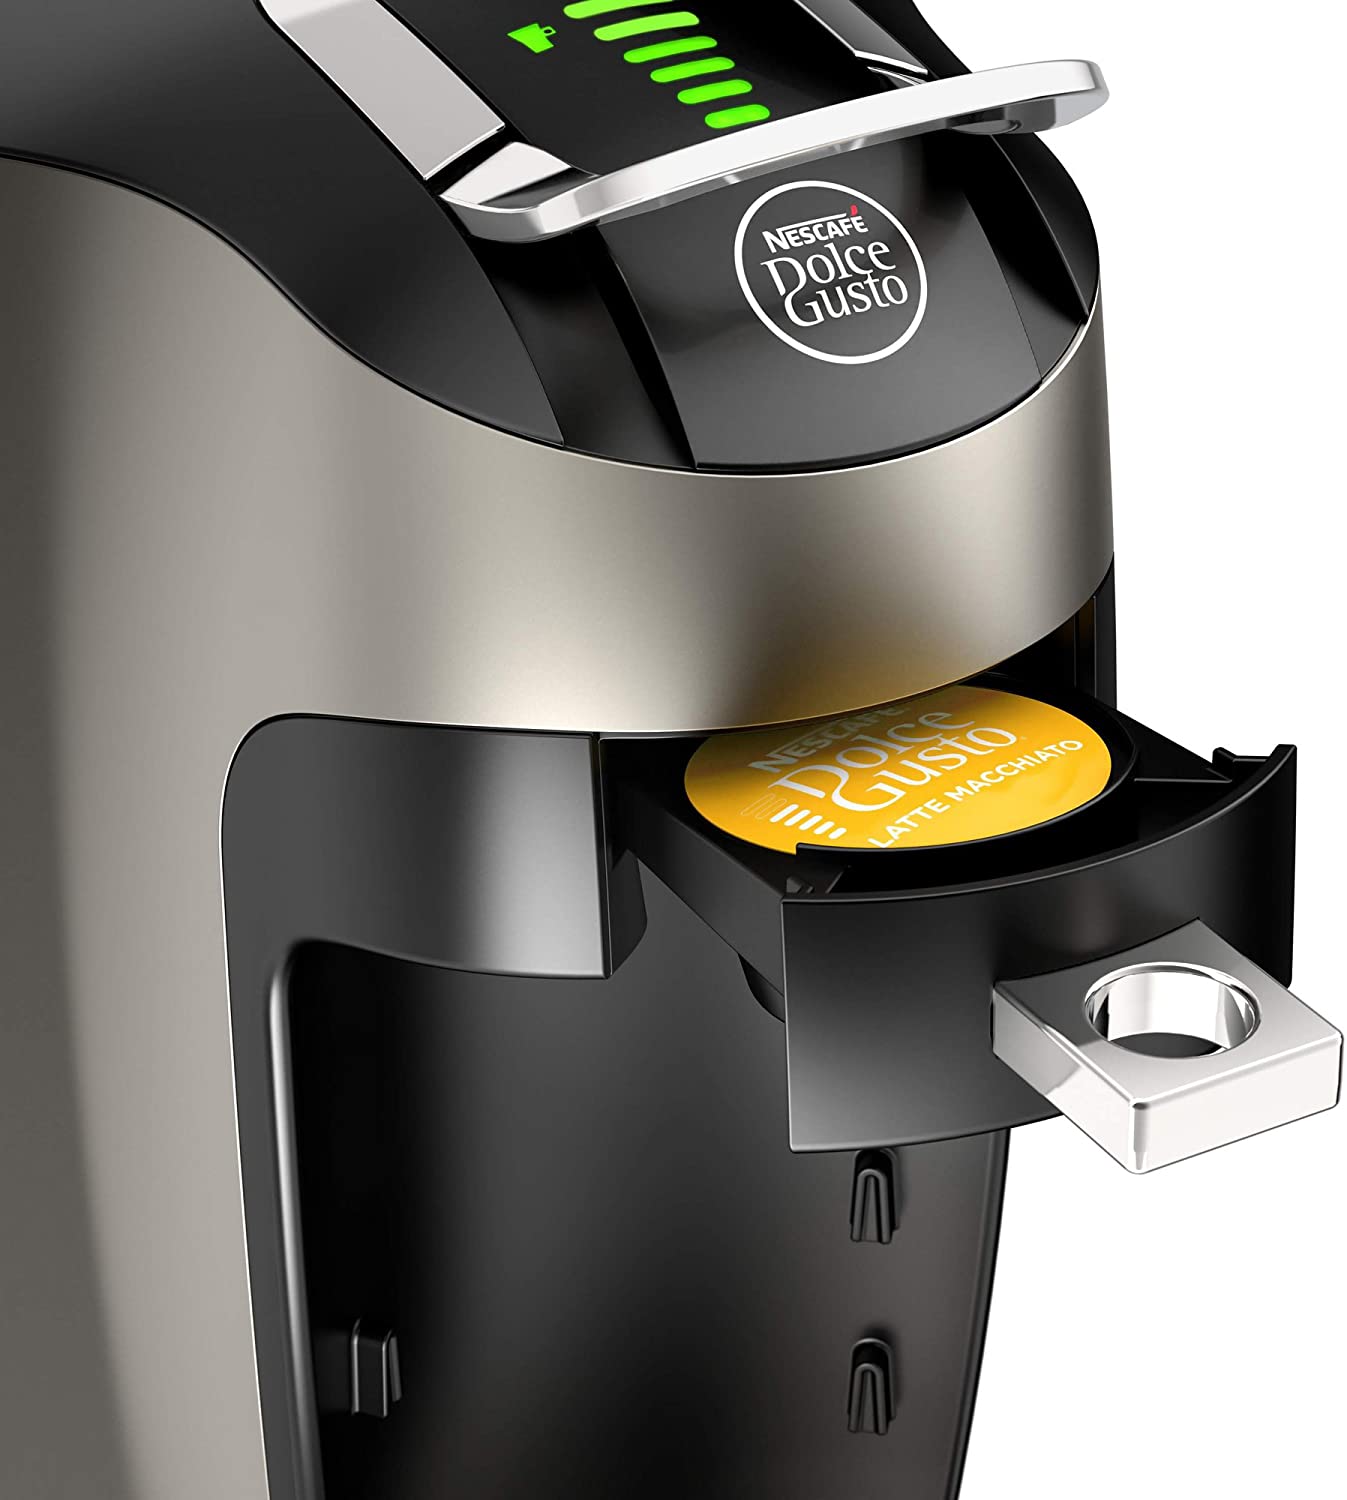 NESCAFÉ » (Dolce Gusto) Coffee Machine Review 2022